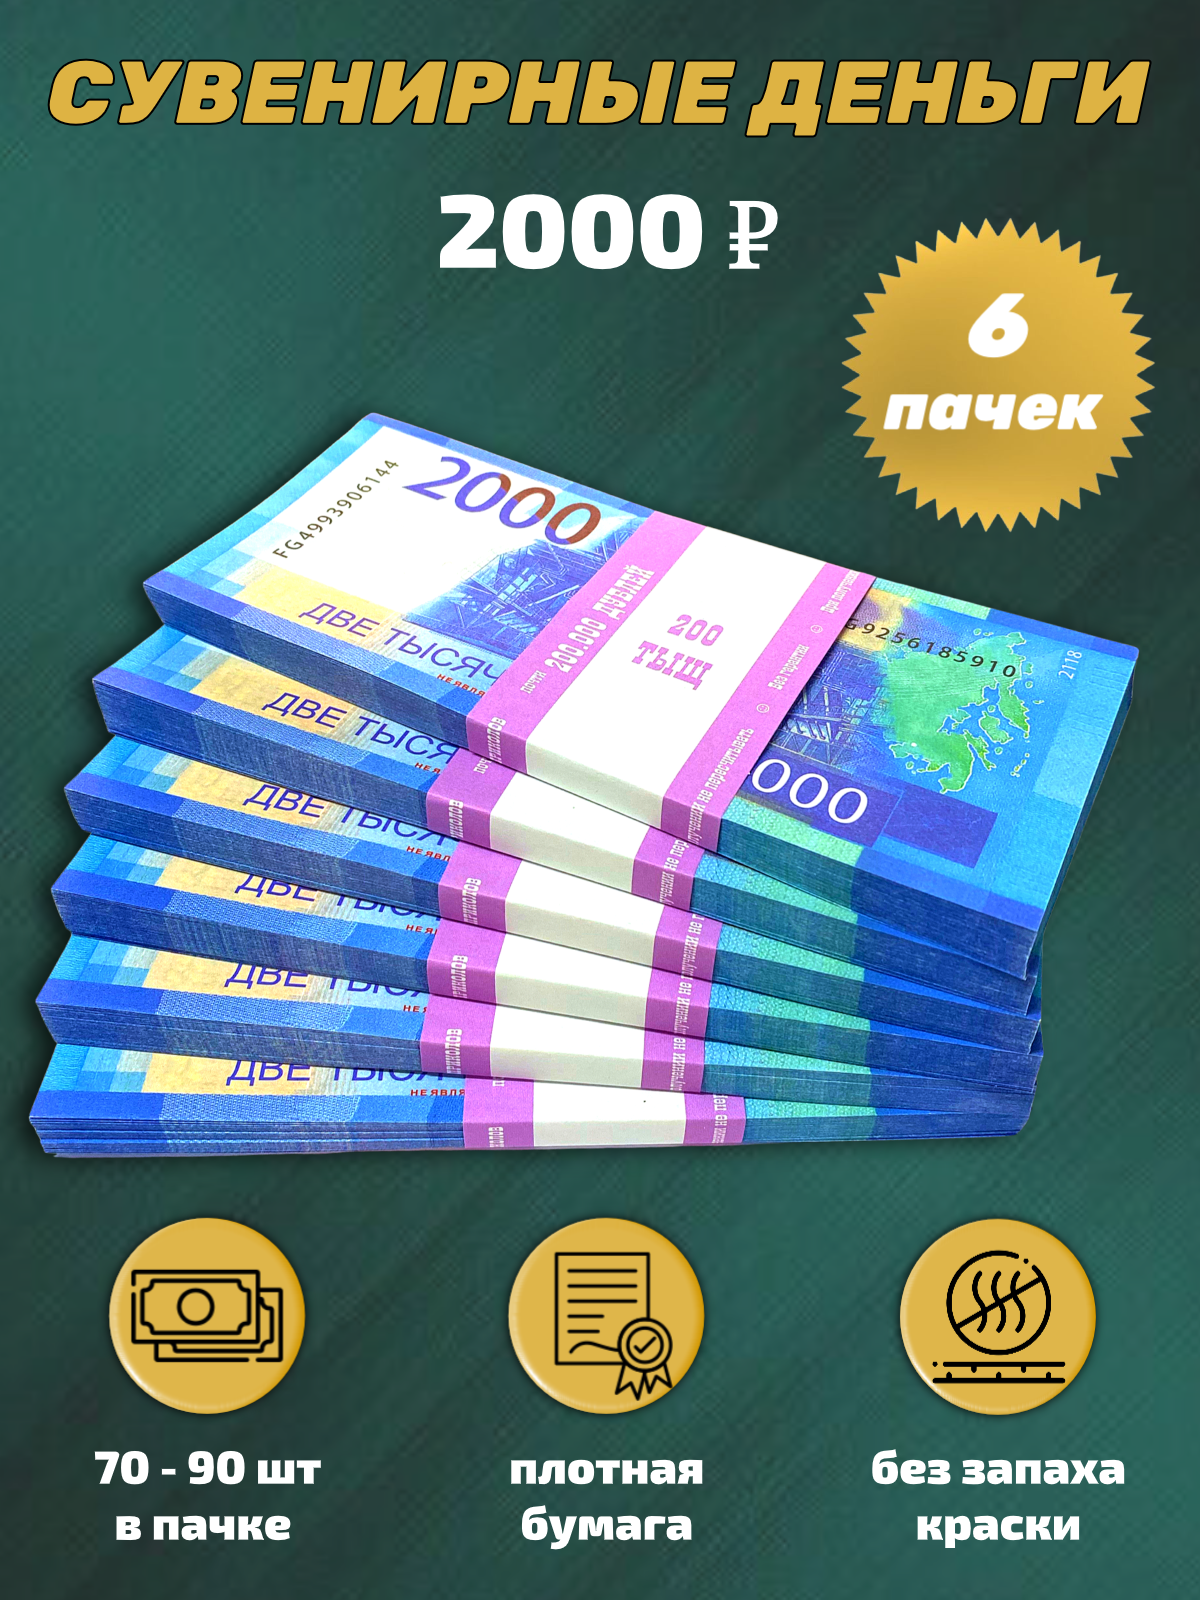 Сувенирные деньги набор 2000 руб - 6 пачек